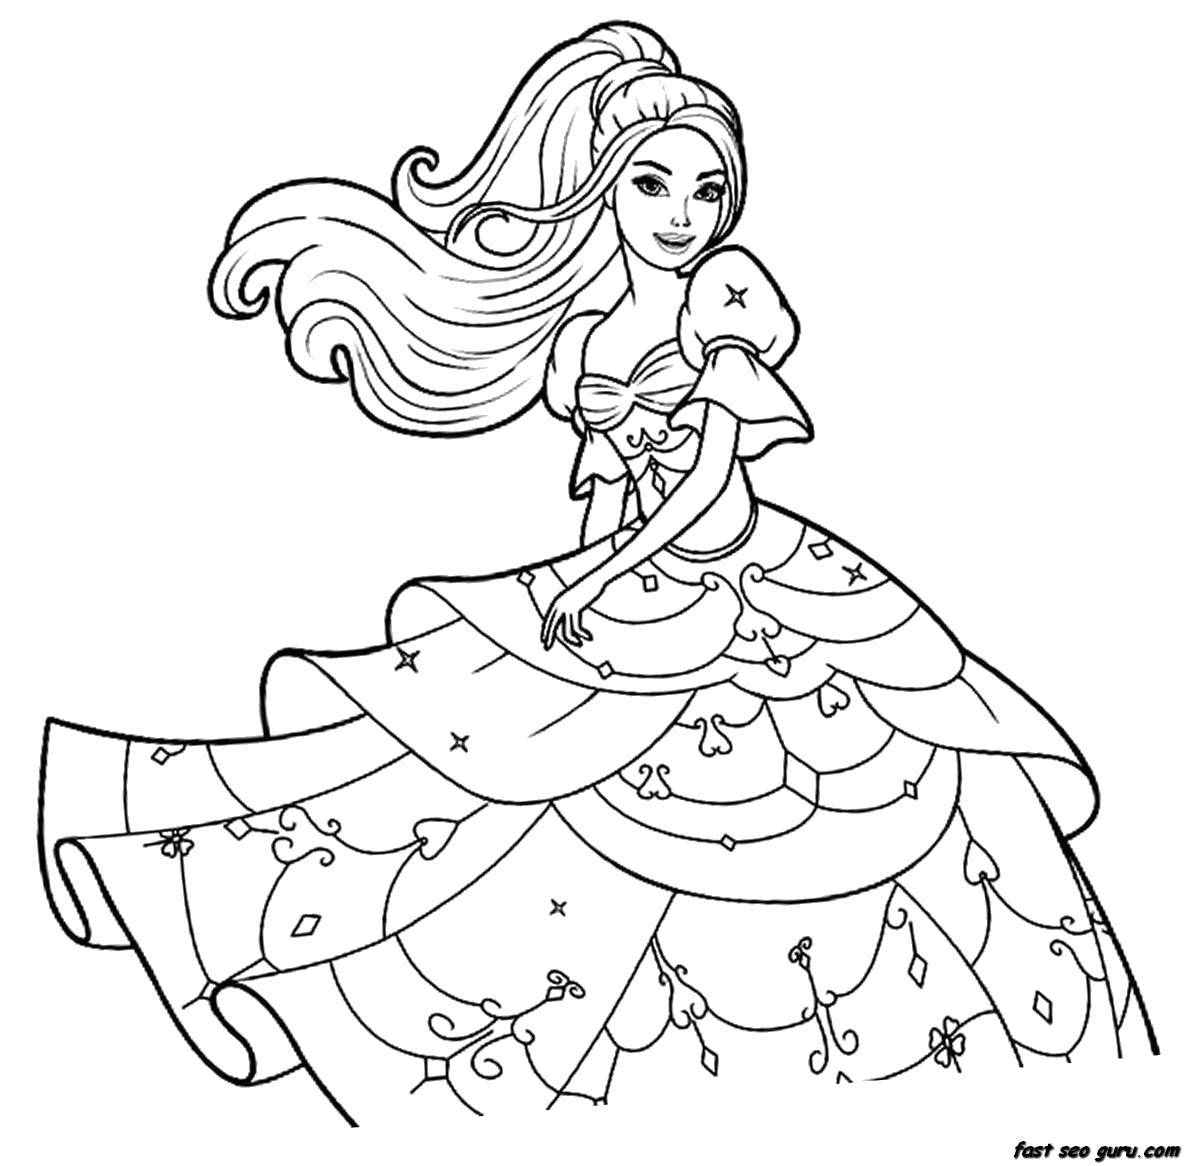 Опис: розмальовки  Красиве бальне плаття. Категорія: Для дівчаток. Теги:  Одяг, плаття.